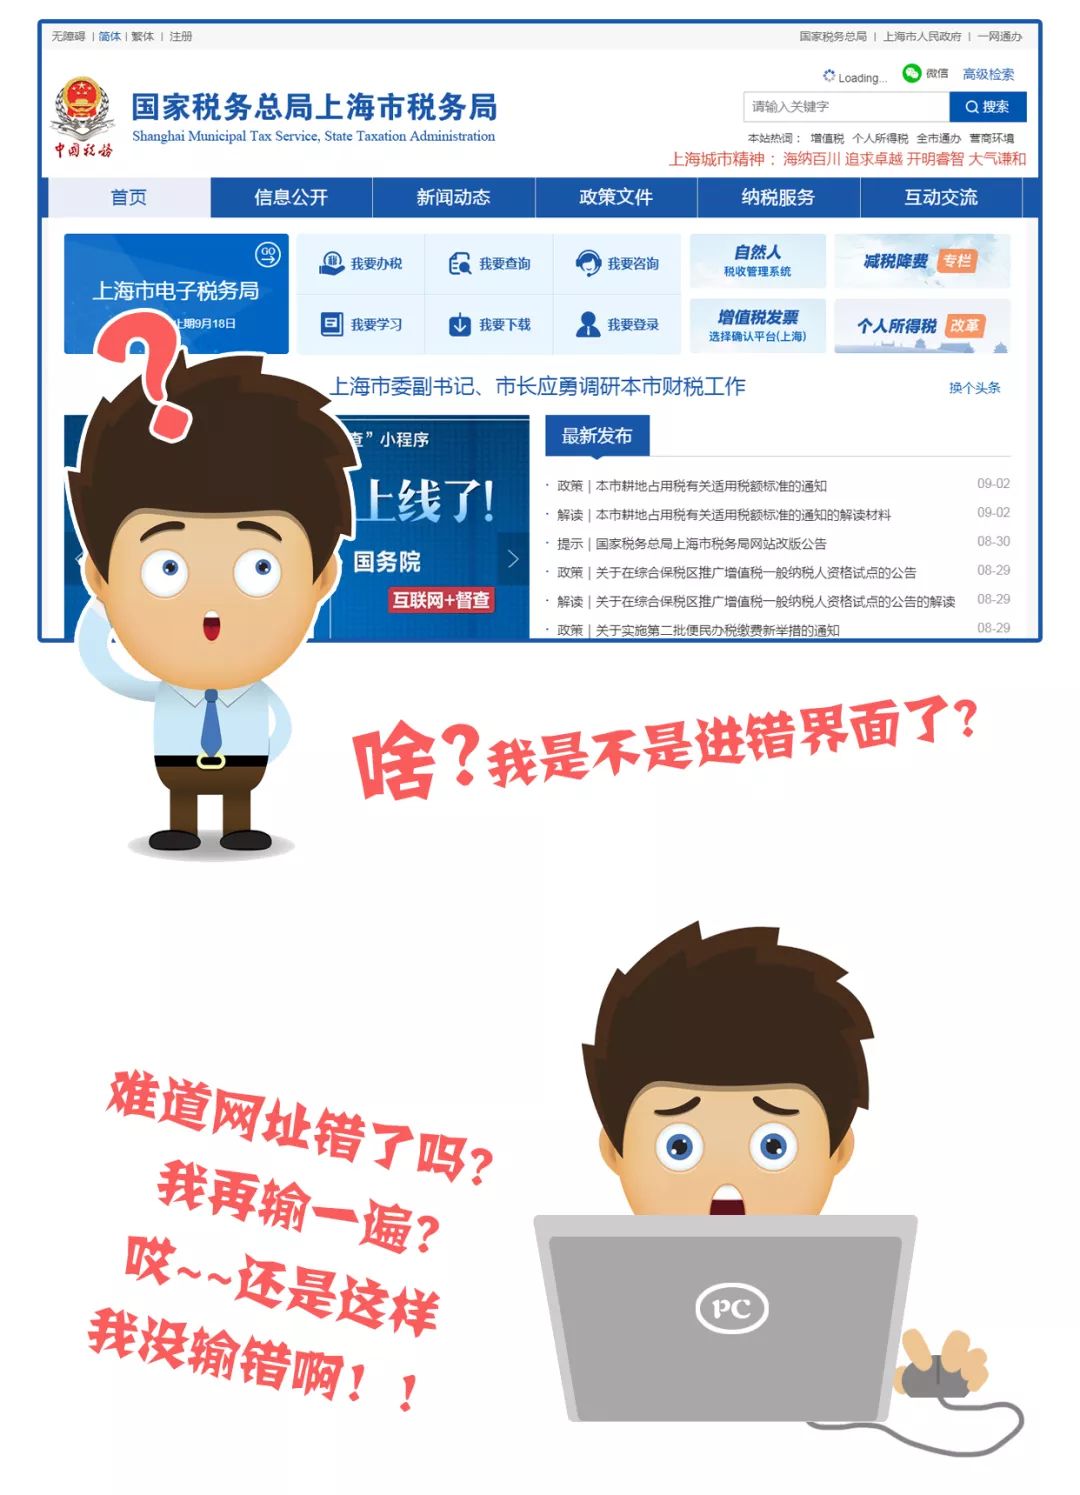 好时光,带您兜兜转转升级版上海税务网站!